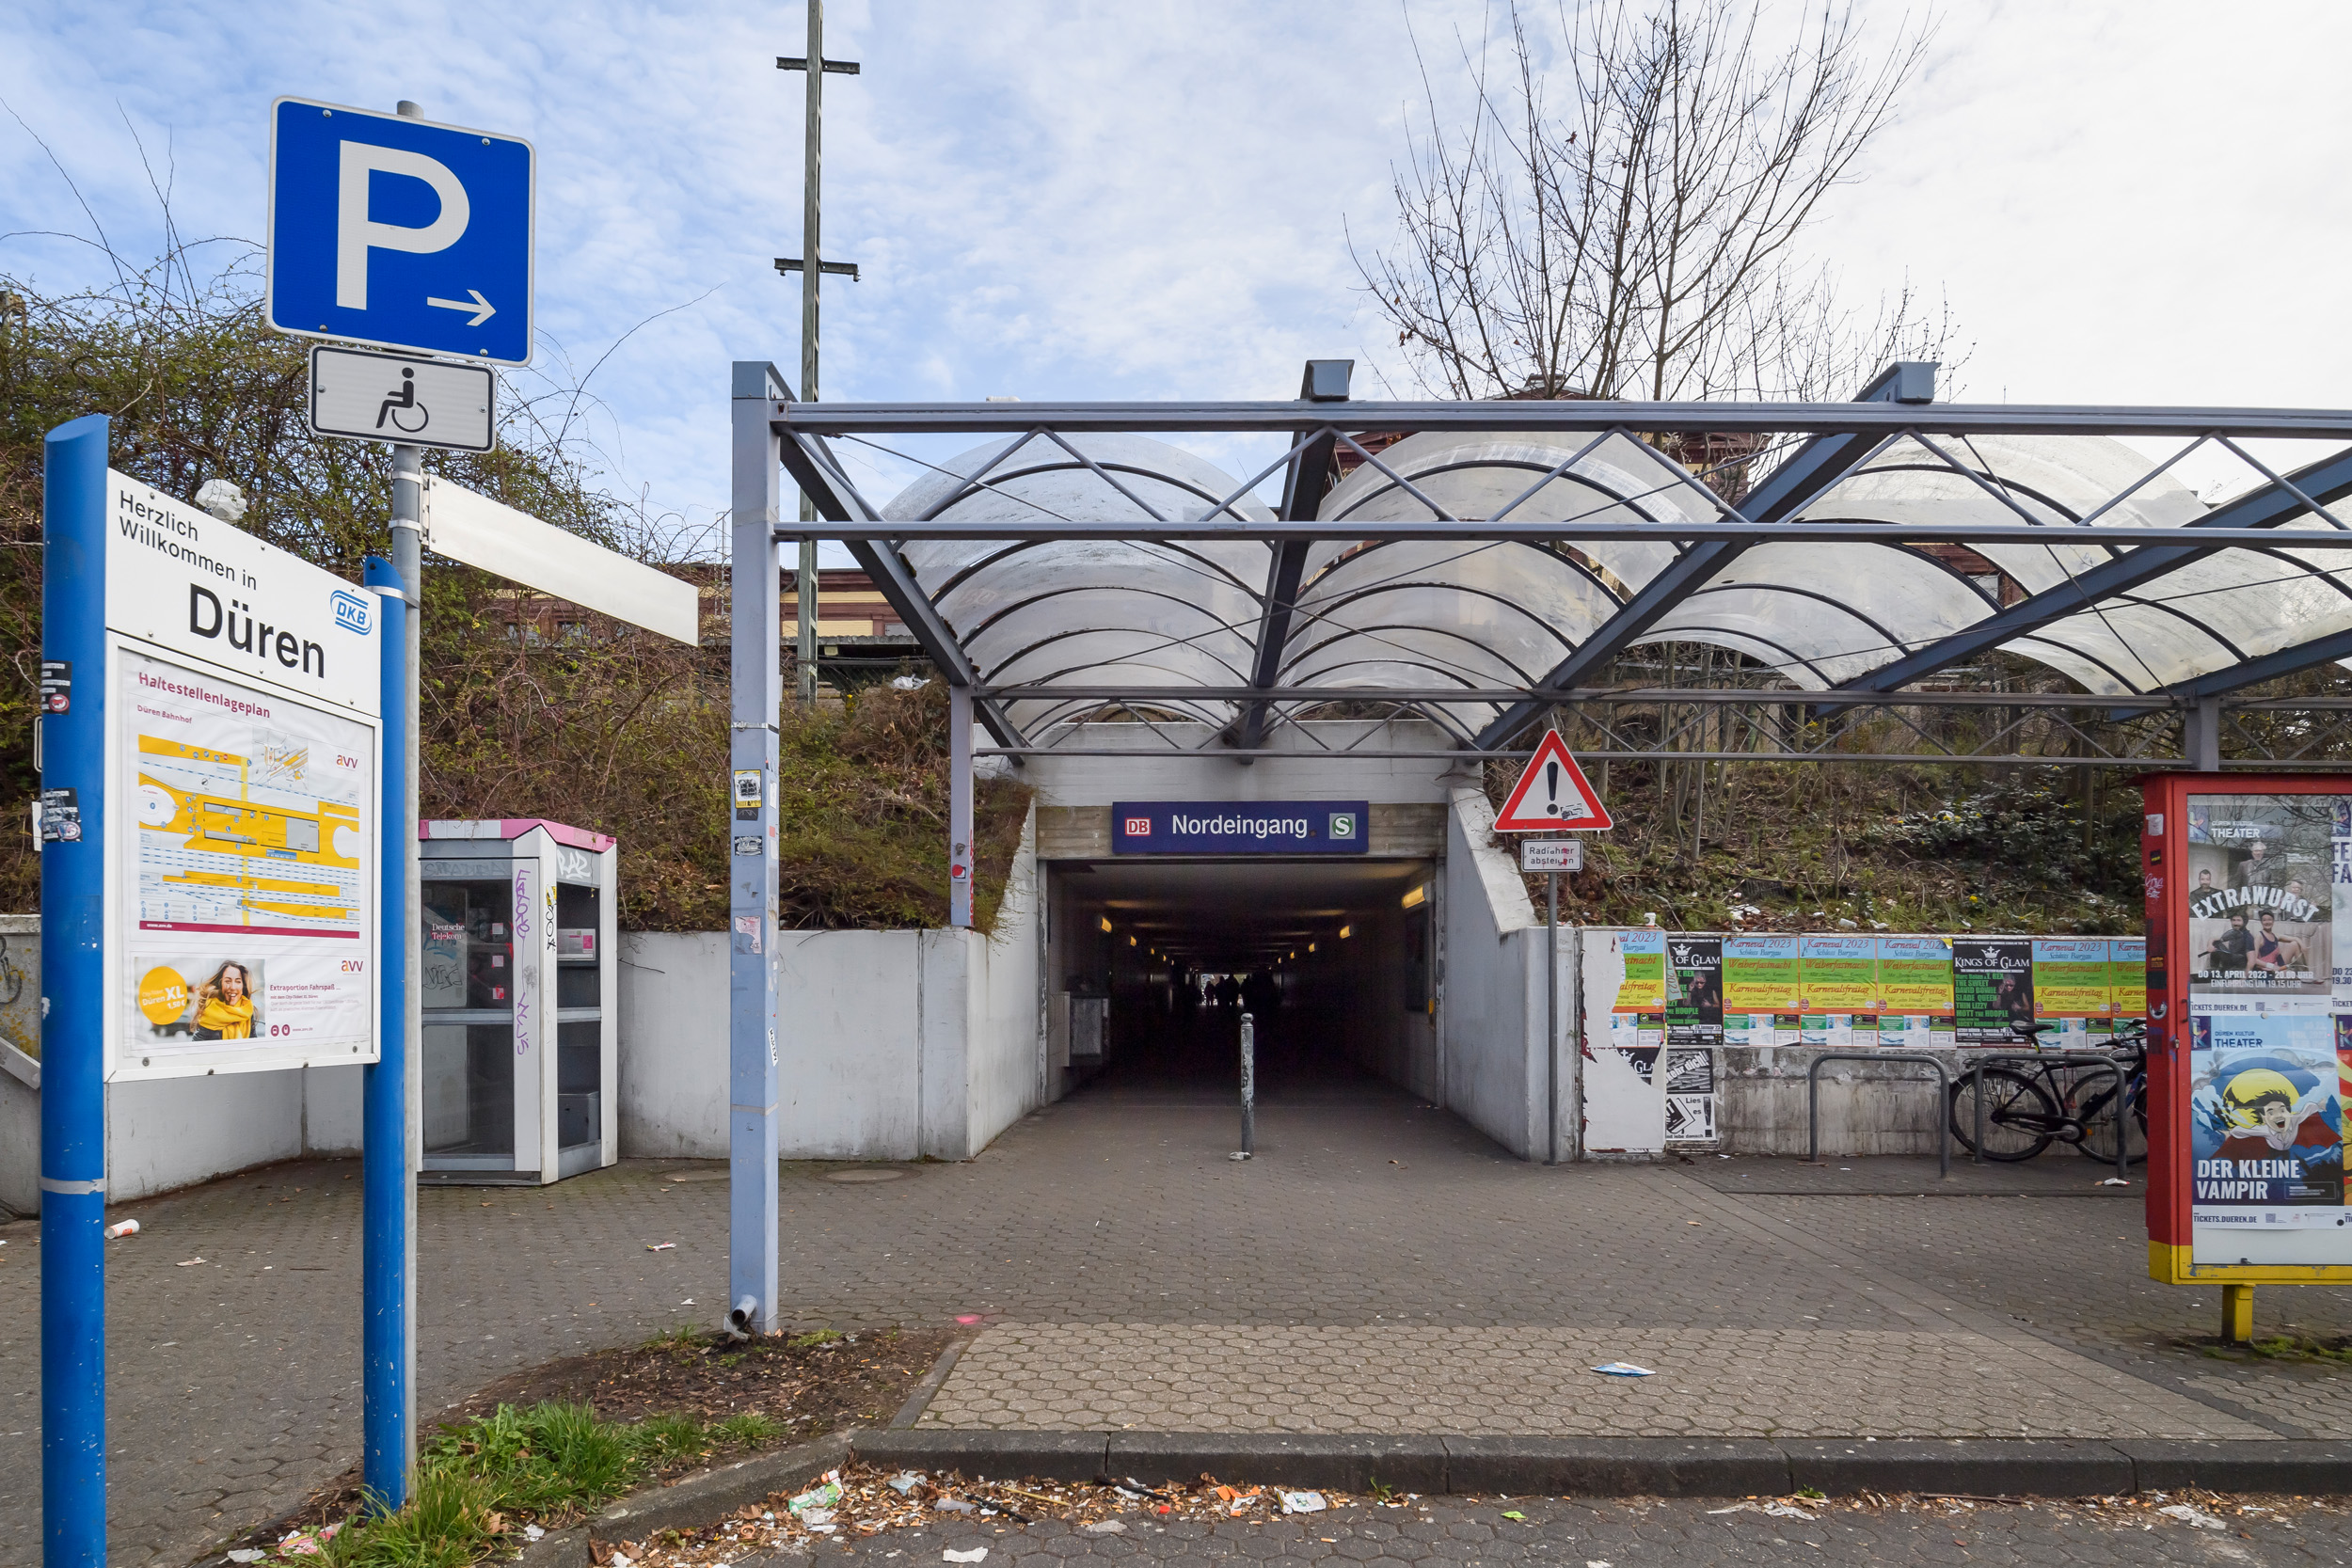 Schöner ankommen in NRW: Bahnhof Düren - Ausgang Parkplatz